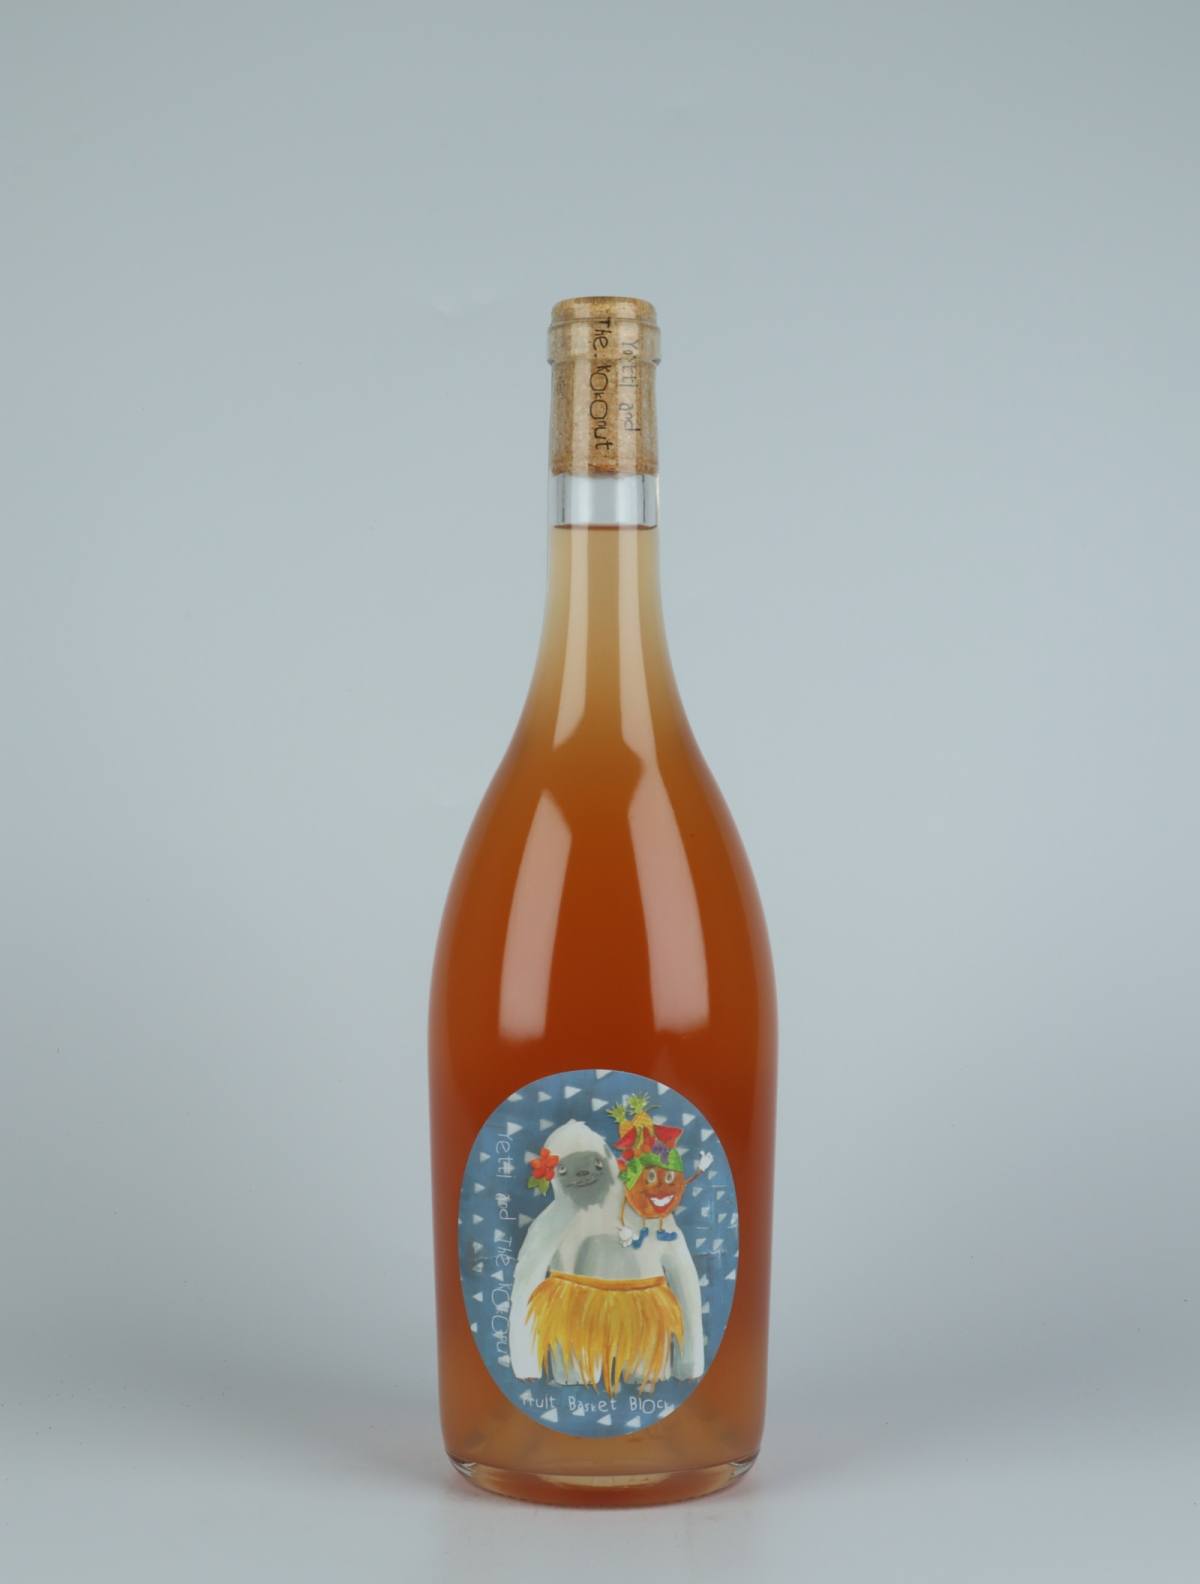 En flaske 2021 Fruit Basket Orange vin fra Yetti and the Kokonut, Adelaide Hills i Australien